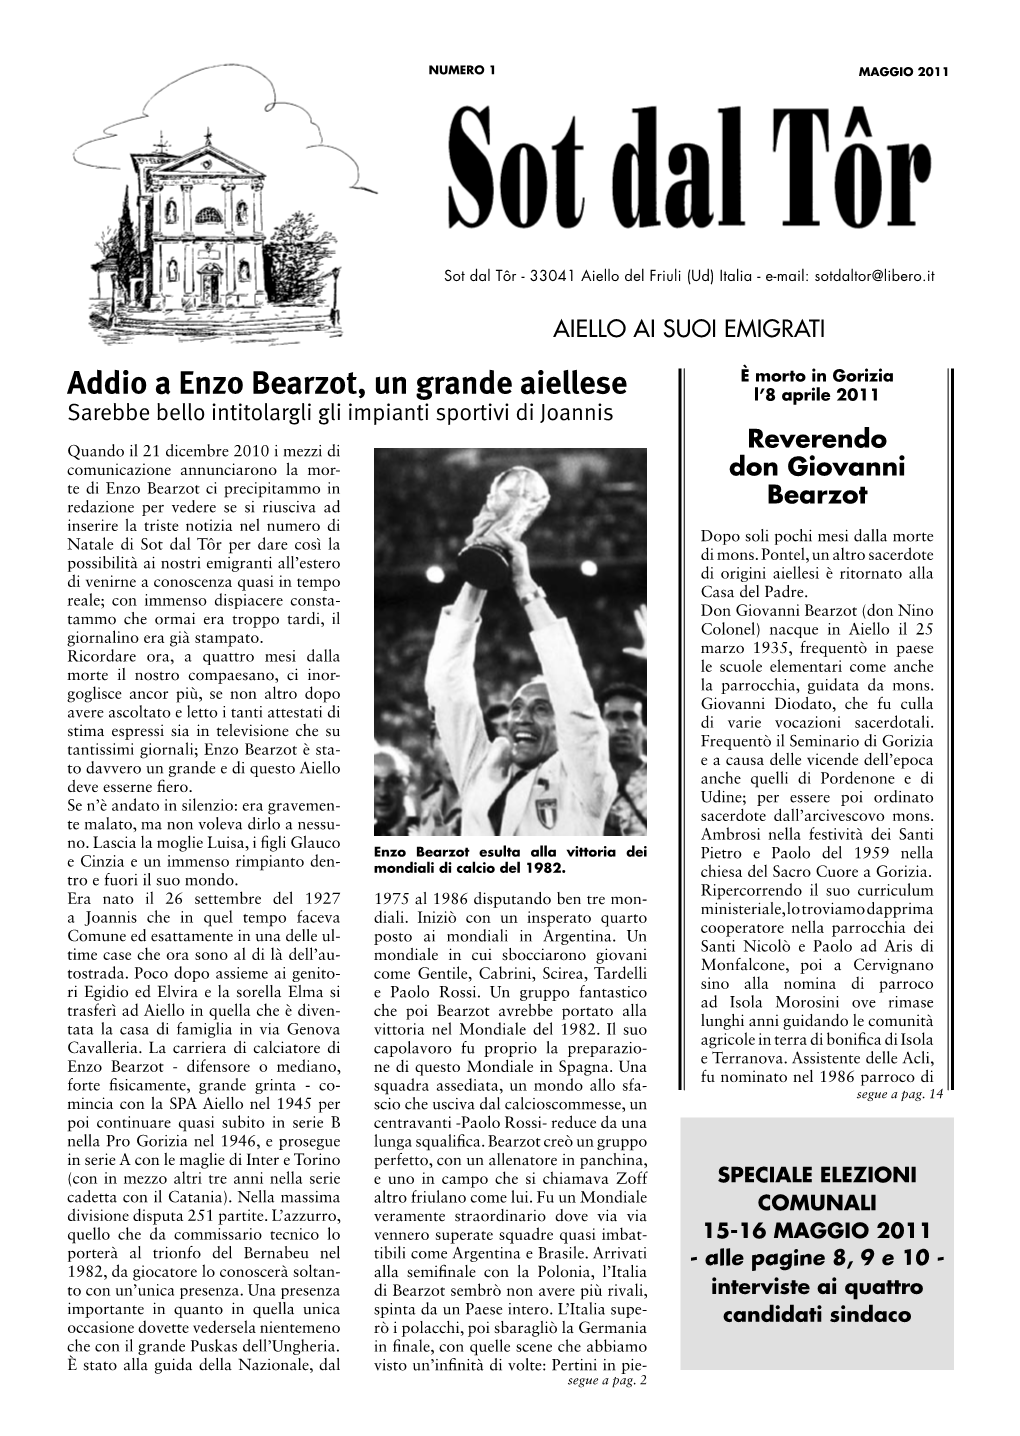 Addio a Enzo Bearzot, Un Grande Aiellese L’8 Aprile 2011 Sarebbe Bello Intitolargli Gli Impianti Sportivi Di Joannis